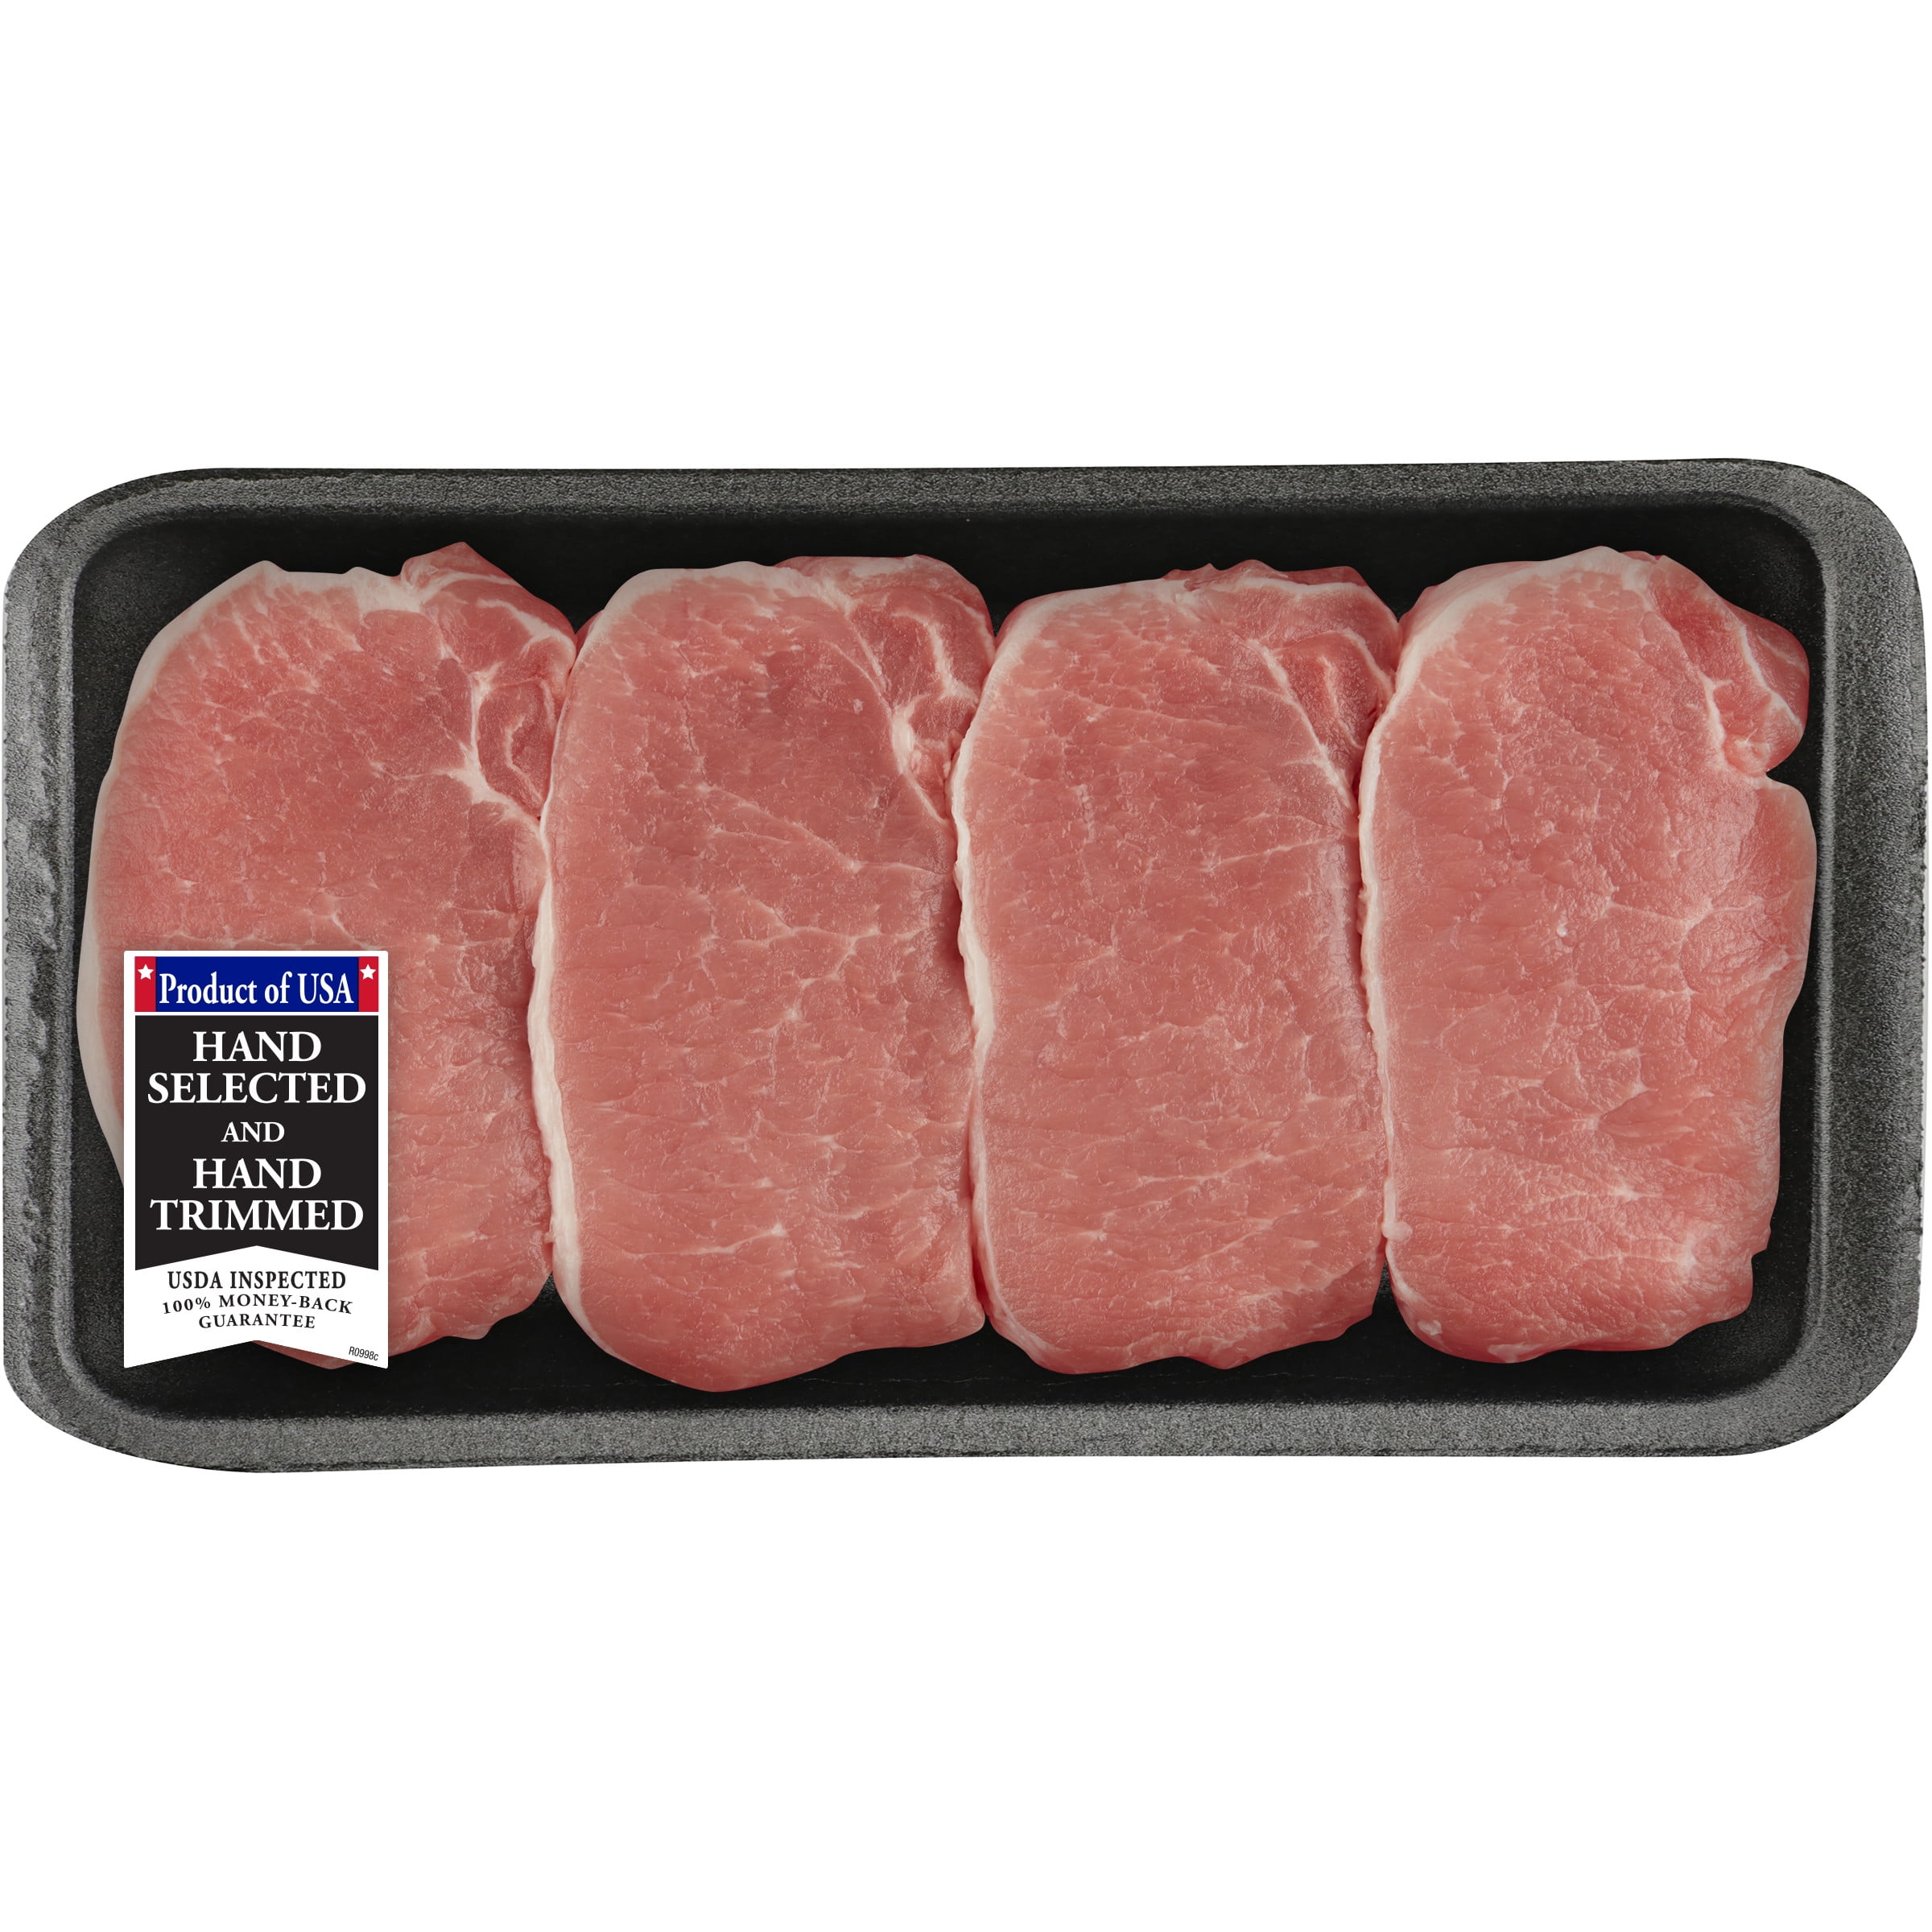 Pork Center Cut Loin Chops Boneless 0 9 2 01 Lb Walmart Com